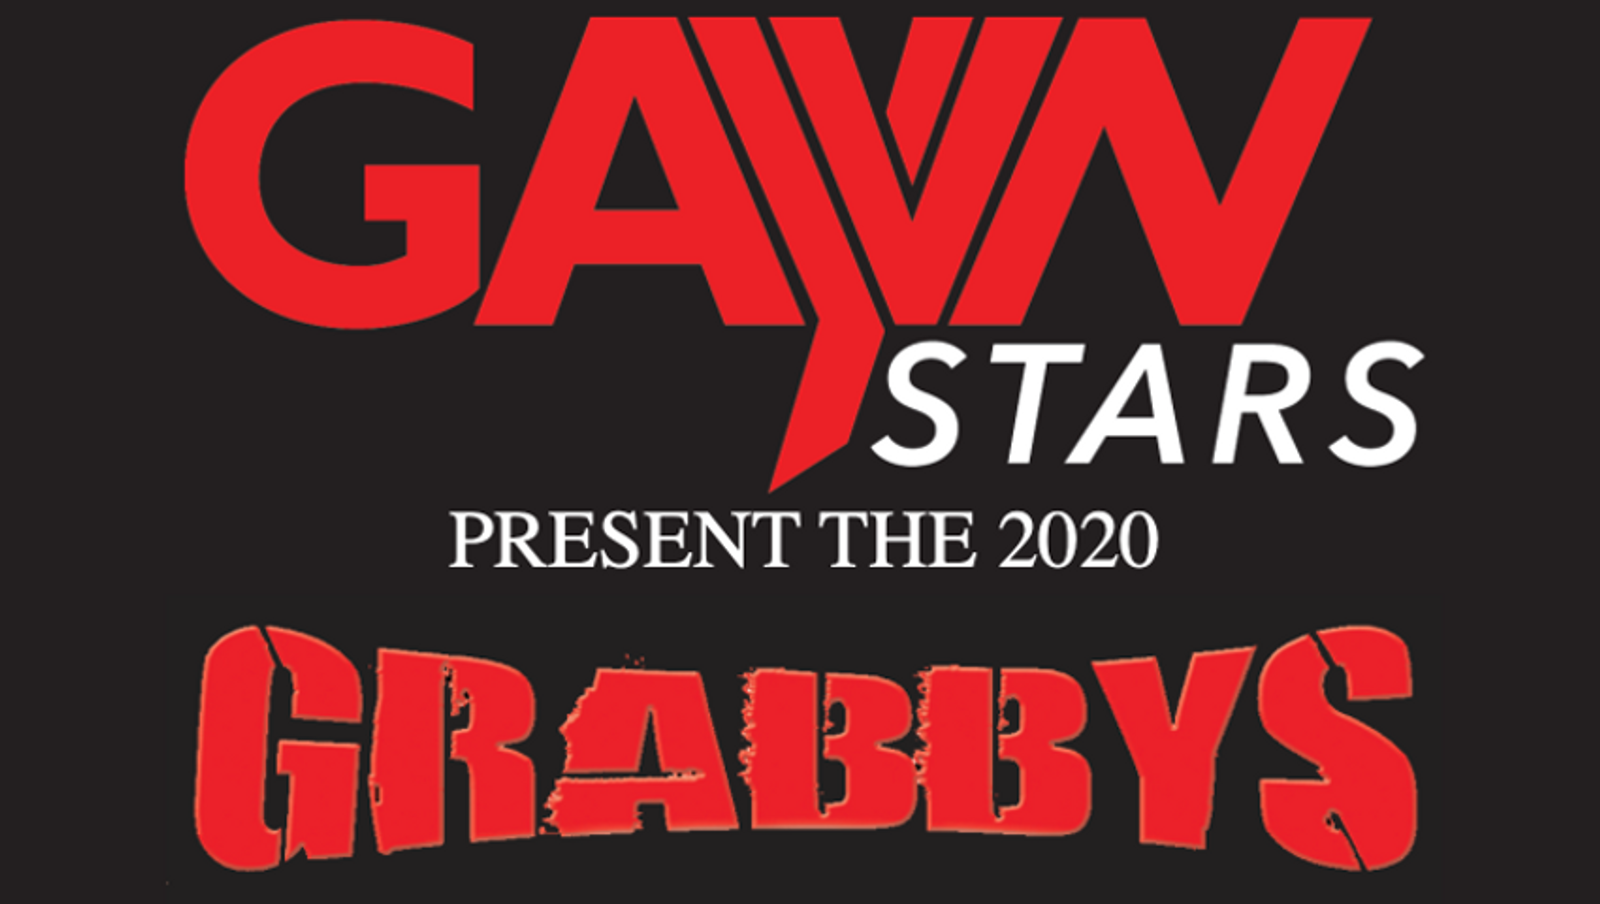 Grabbys Announces Winners on GayVN Stars, Shares Message of Hope